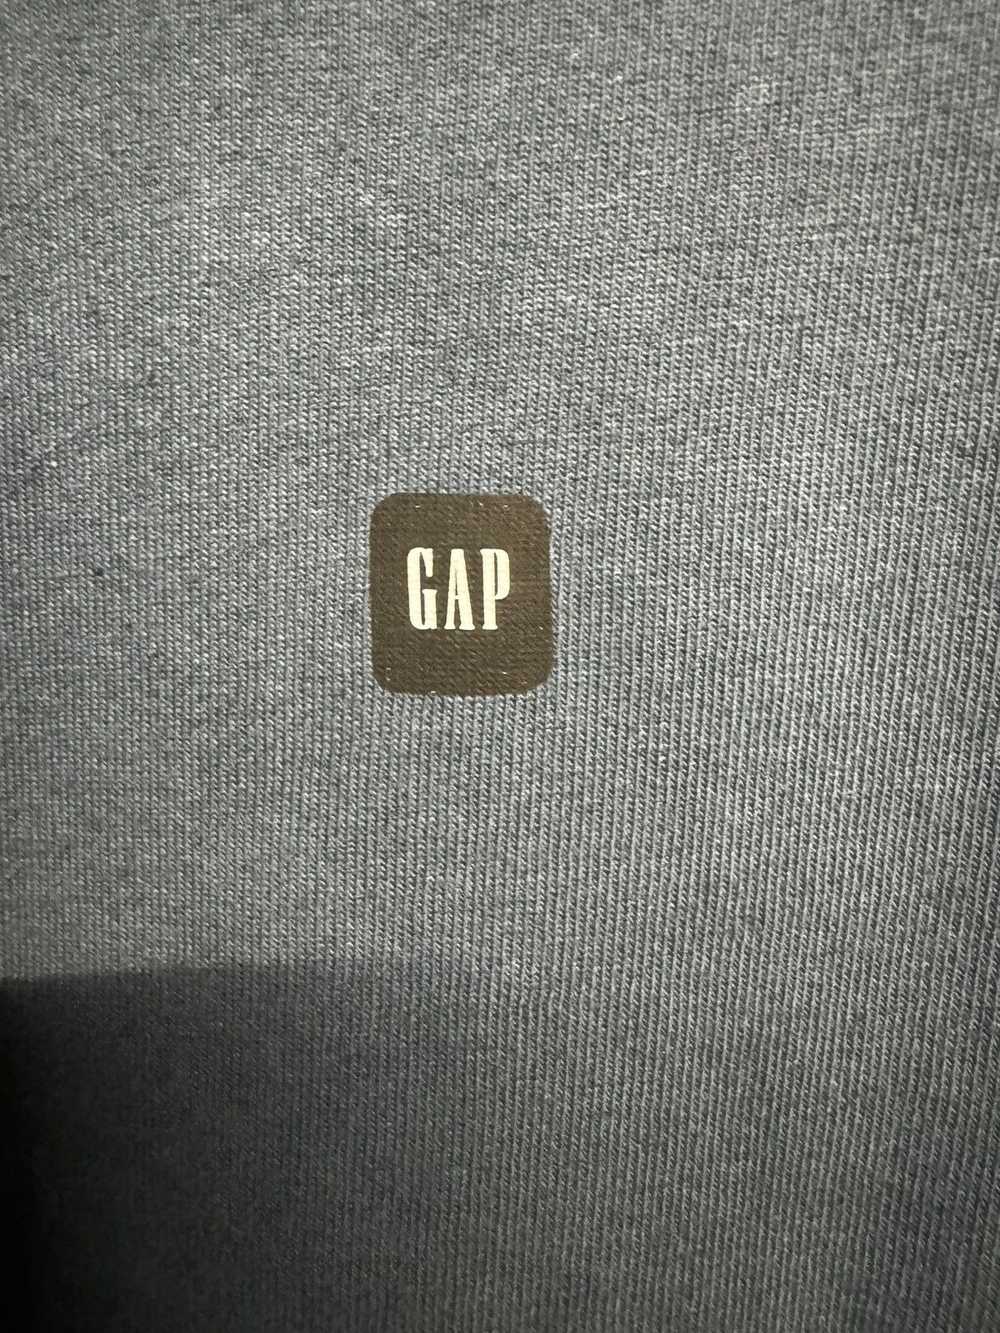 Gap × Kanye West × Yeezy Season Yeezy Gap Logo Lo… - image 3